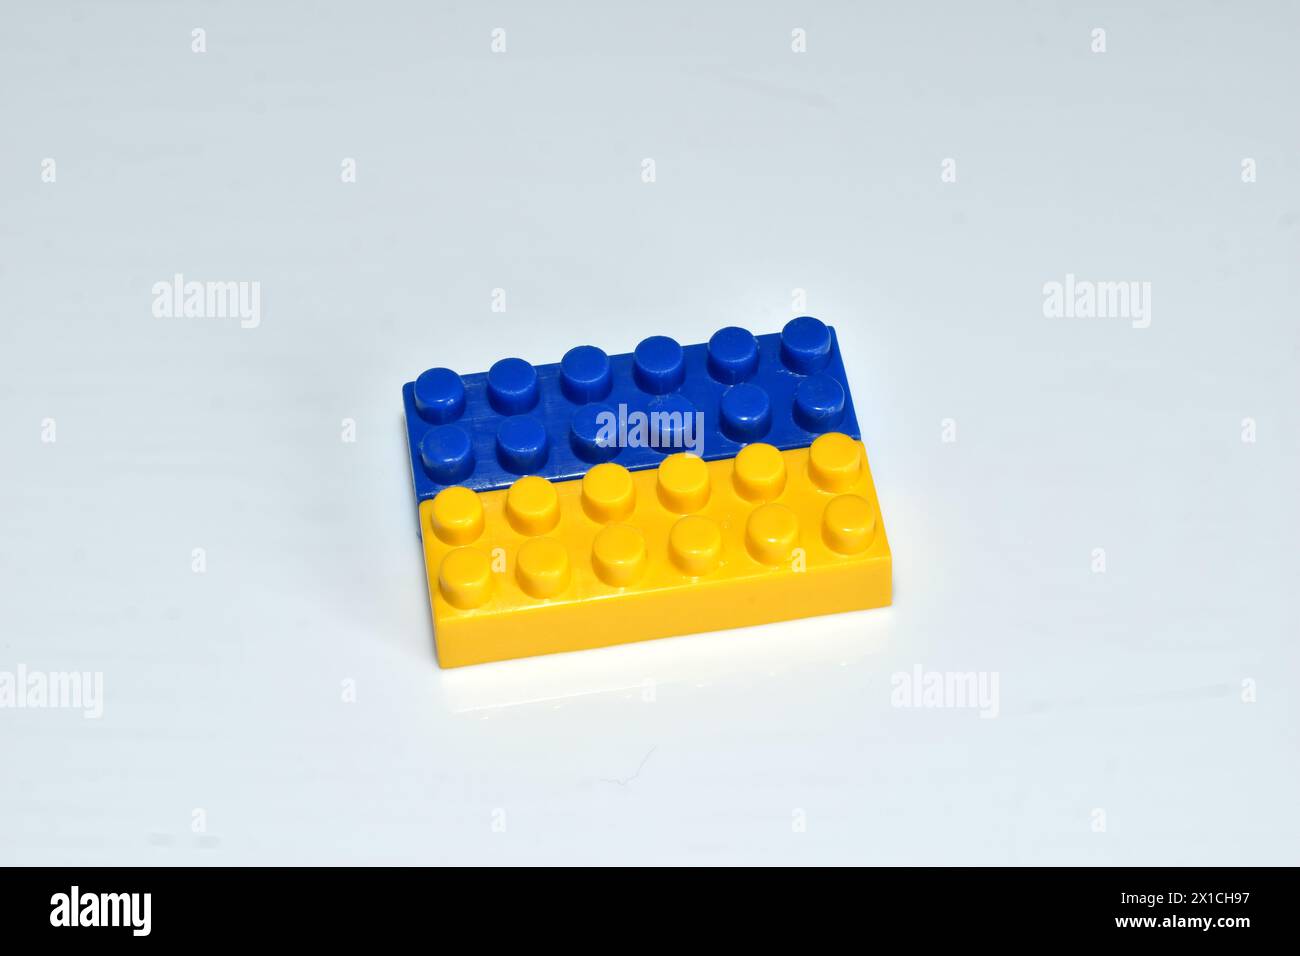 Plastikdetail des Designers in gelben und blauen Farben, die an die Flagge der Ukraine erinnern. Stockfoto